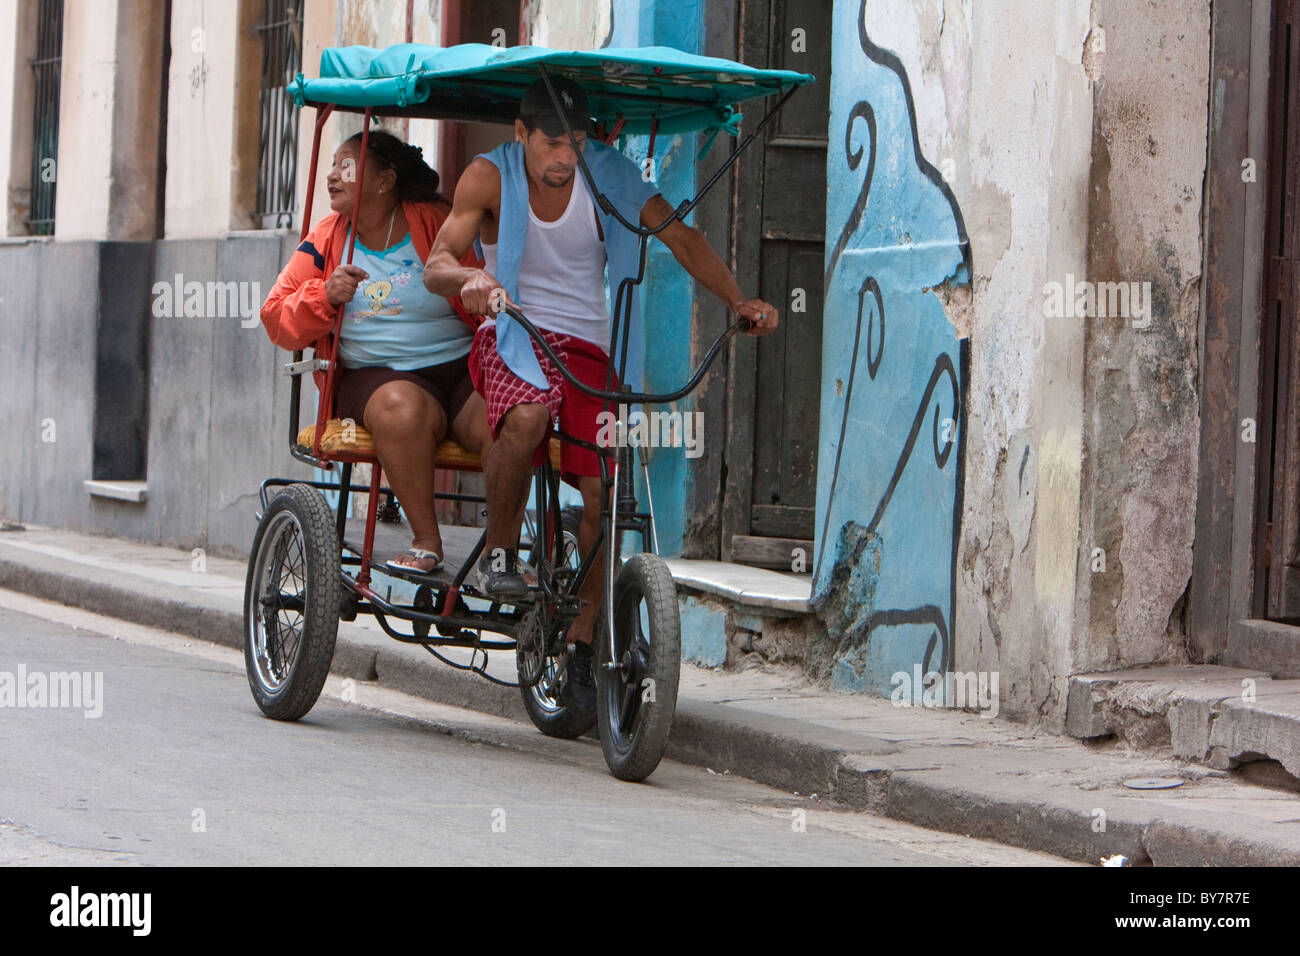 Kuba, Havanna. Mann-angetriebene Fahrrad-Taxis ("Bicitaxis") bieten eine günstige Form der Stadtverkehr in Havanna. Stockfoto